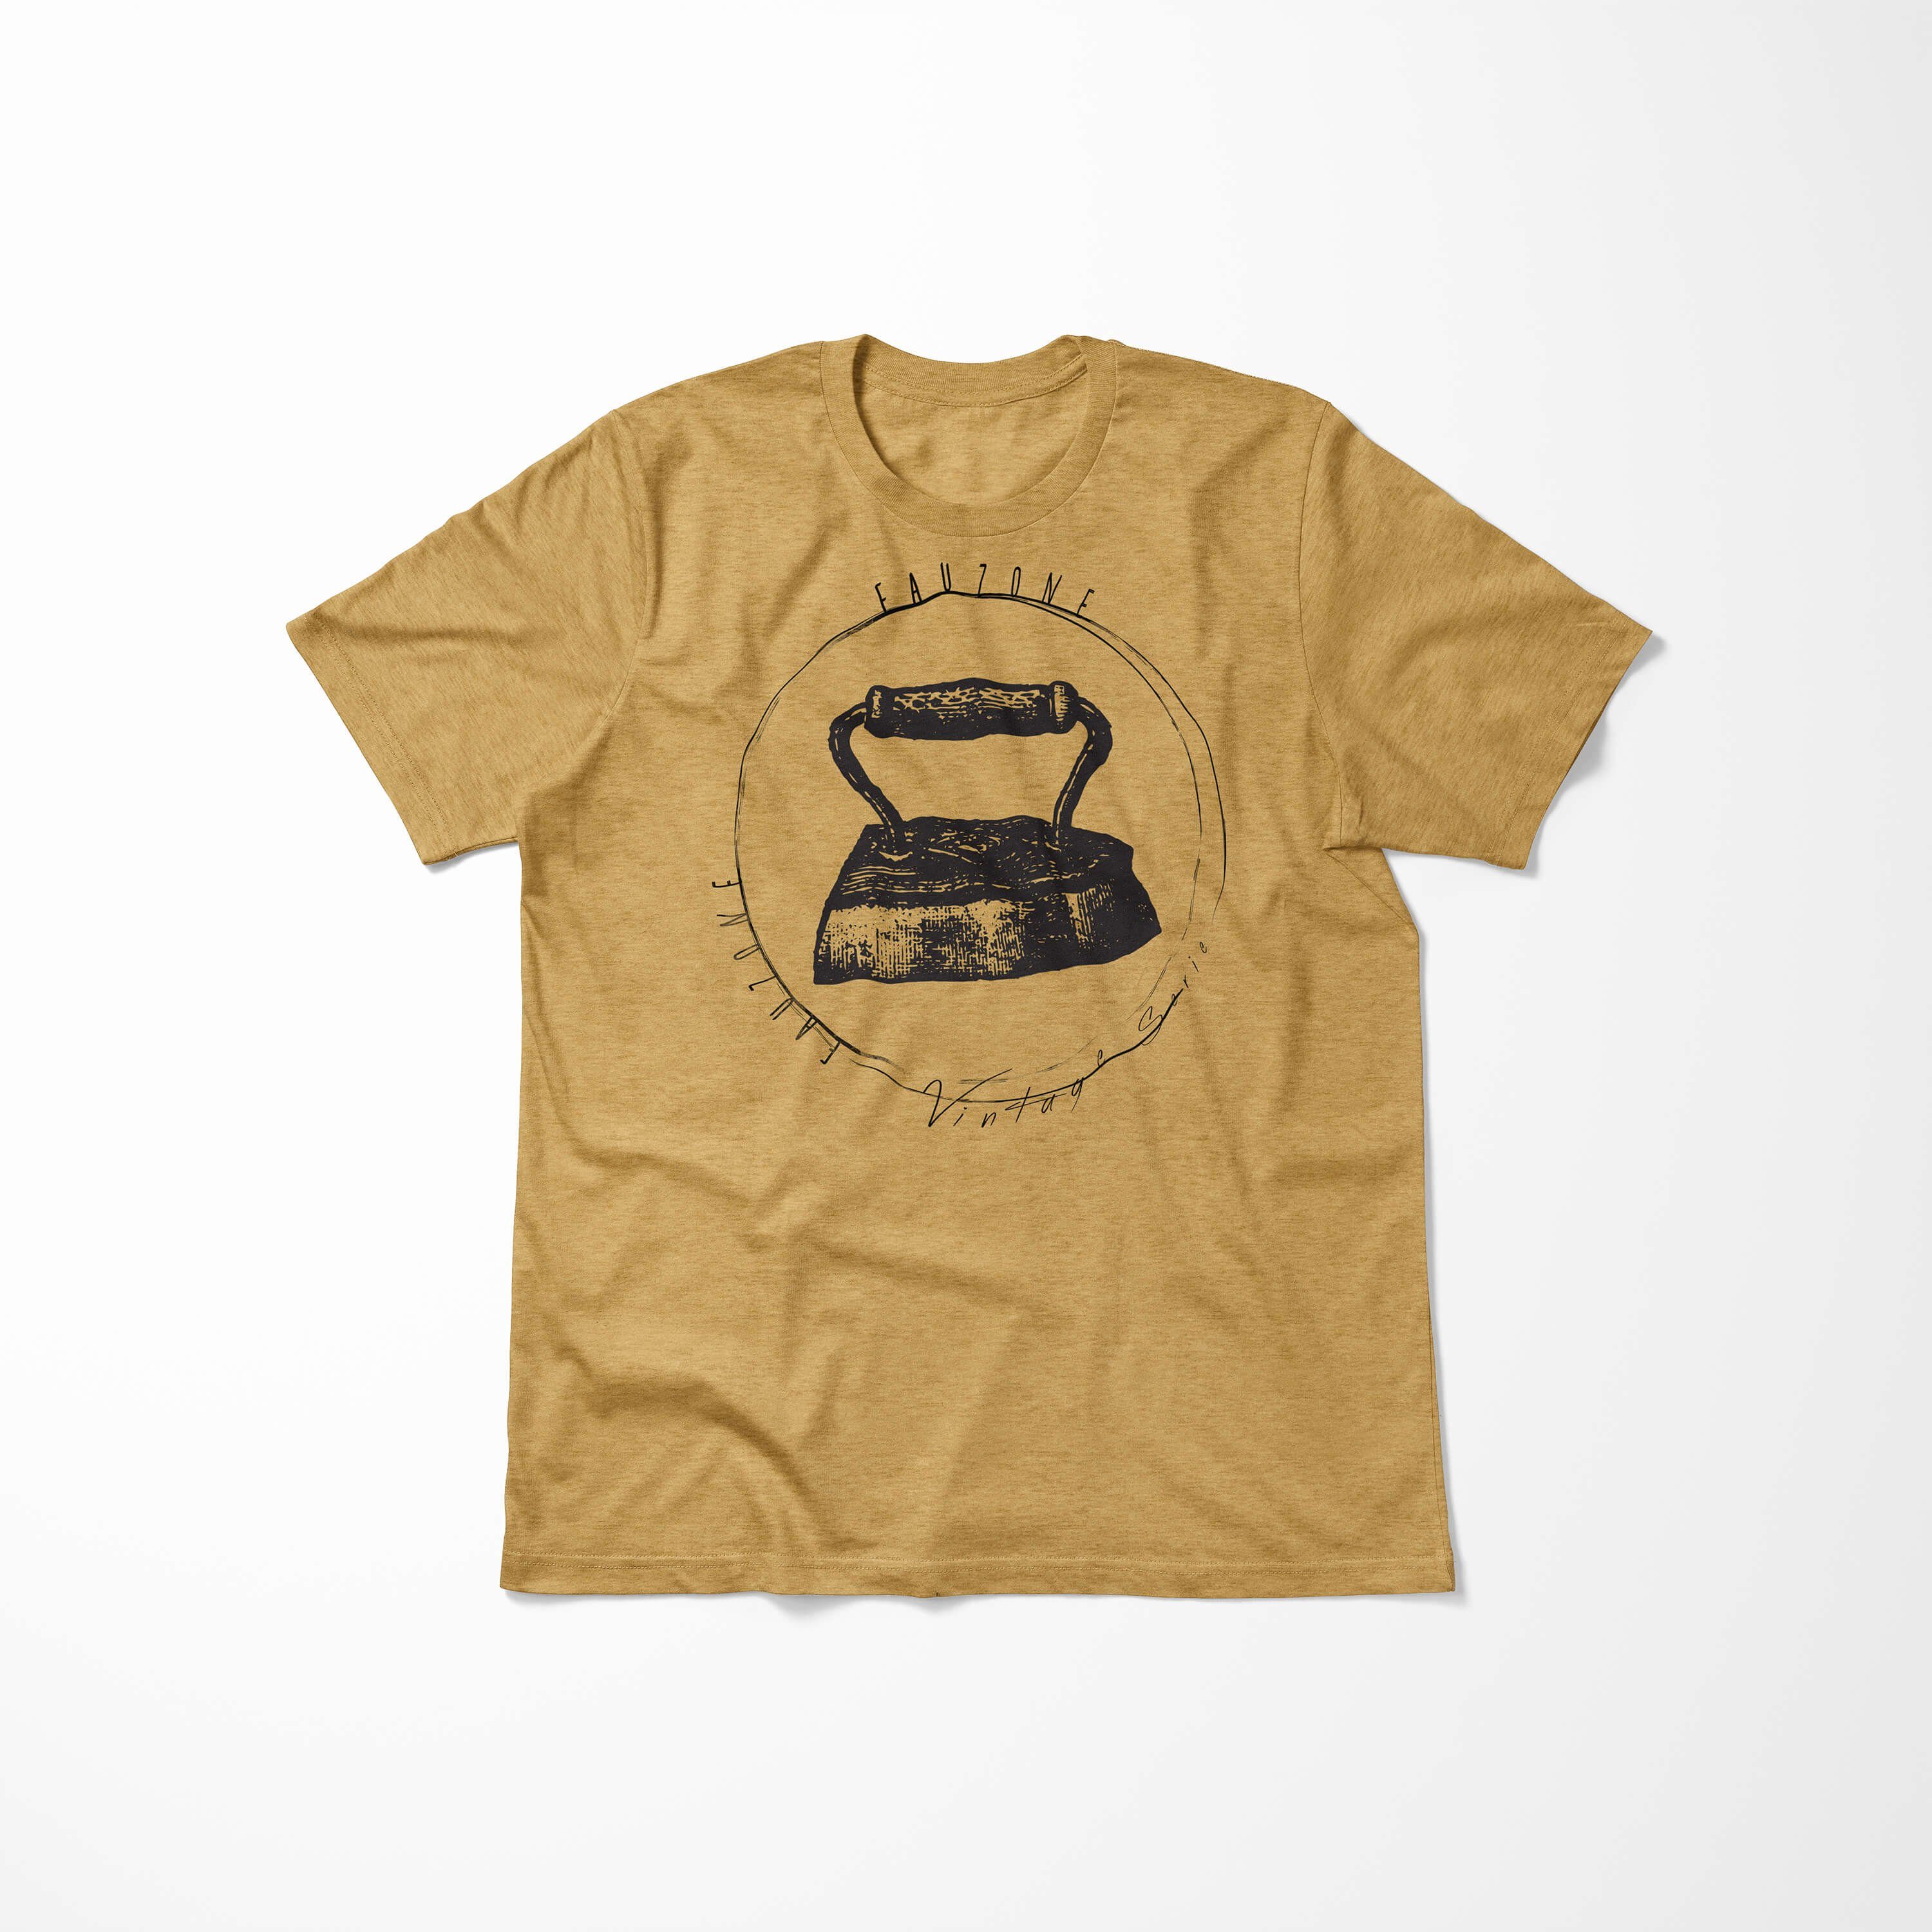 T-Shirt Herren Vintage Bügeleisen Sinus T-Shirt Art Antique Gold